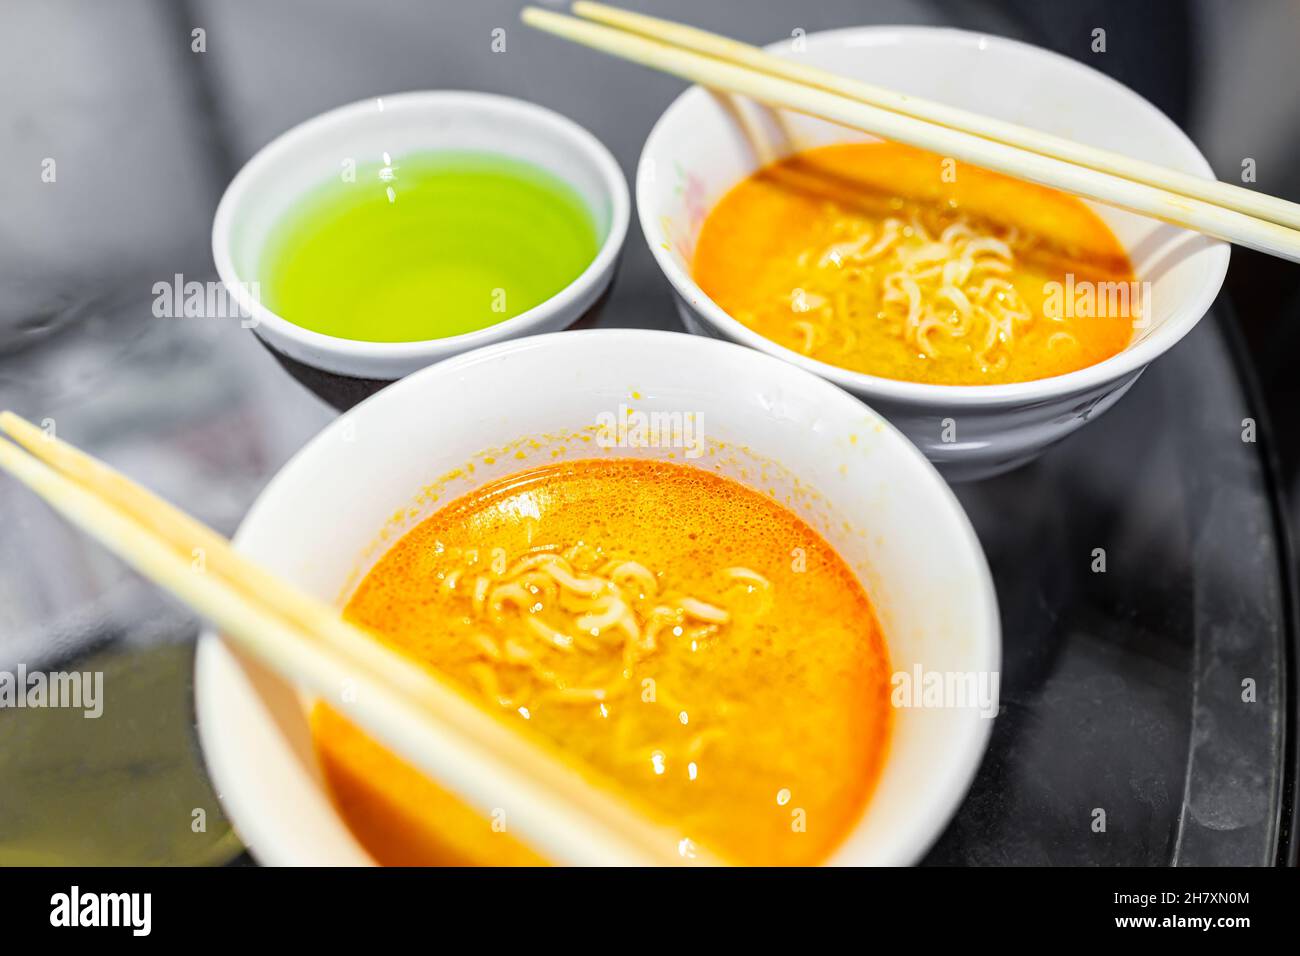 Macrofumatura di due spicciate ciotole rosse ramen zuppa bianca ciotole con bacchette pasto giapponese asiatico e tazza di tè verde Foto Stock